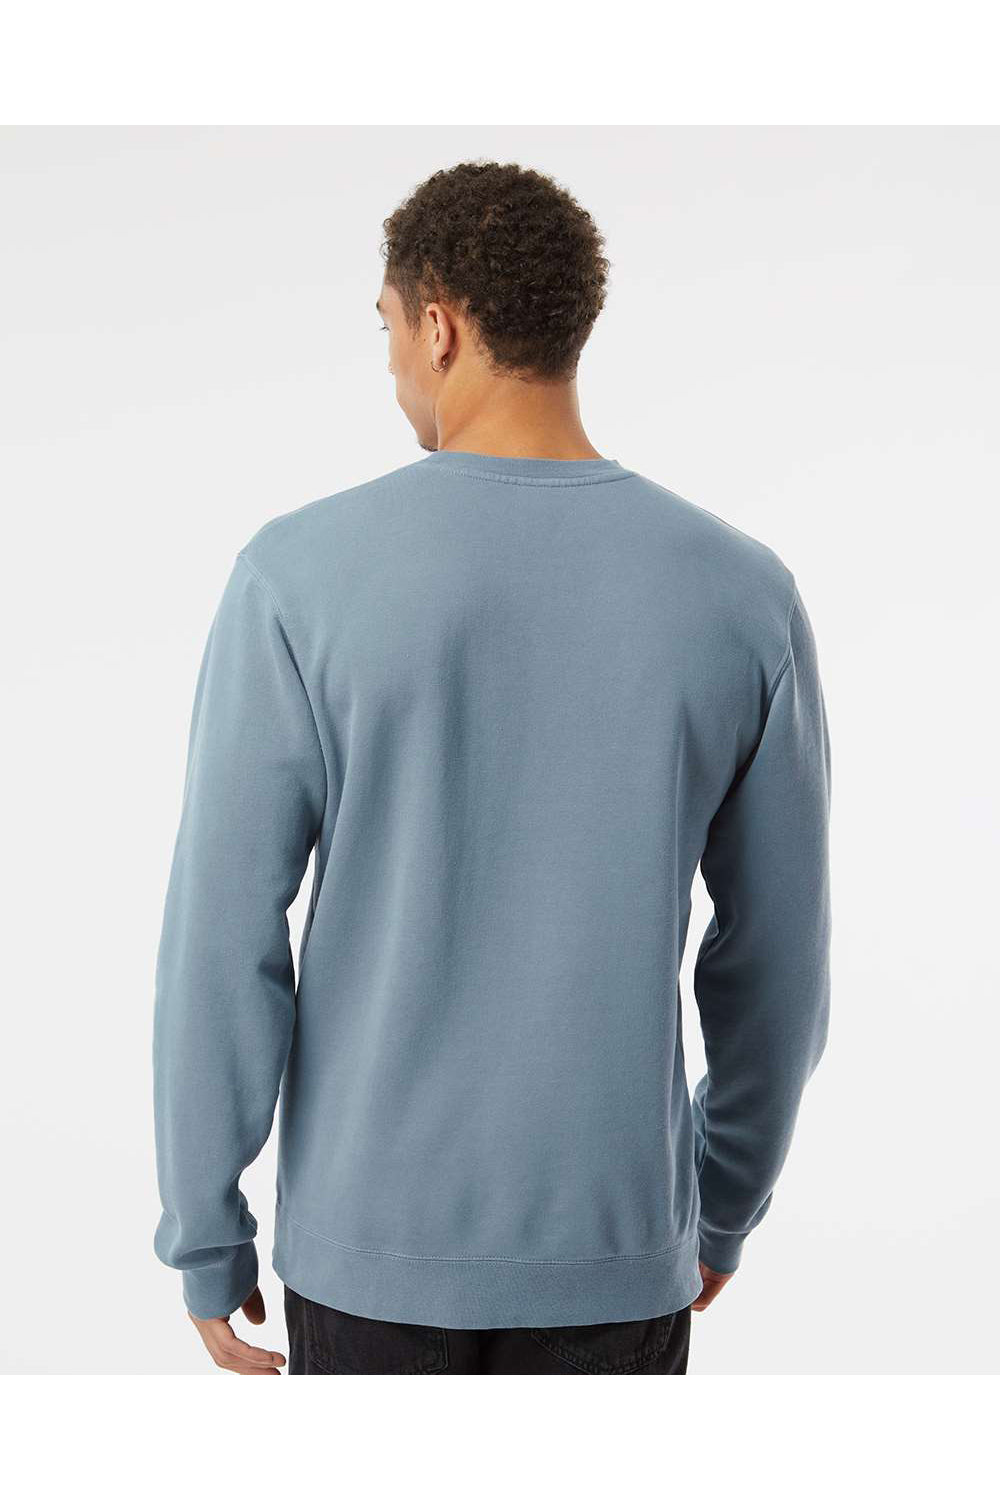 Independent Trading Co. PRM3500 Mens Pigment Dyed Crewneck Sweatshirt Slate Blue Model Back